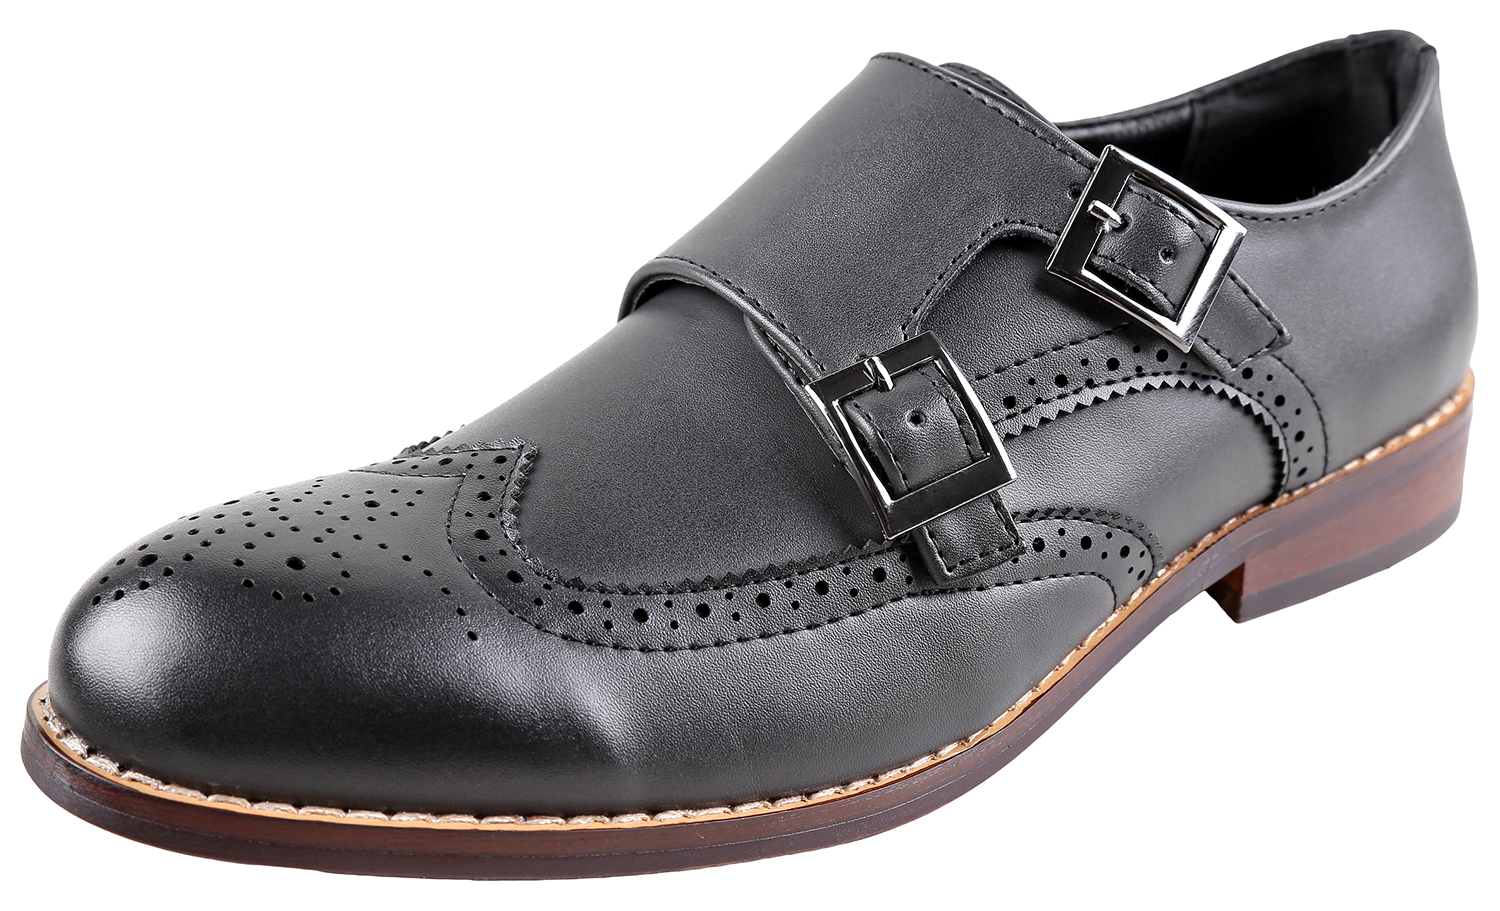 Urban Fox Allen Men's Dress Shoe | Double Monk Strap | Brogue | Wingtip Shoes for Men | Black 11 M US - image 1 of 7